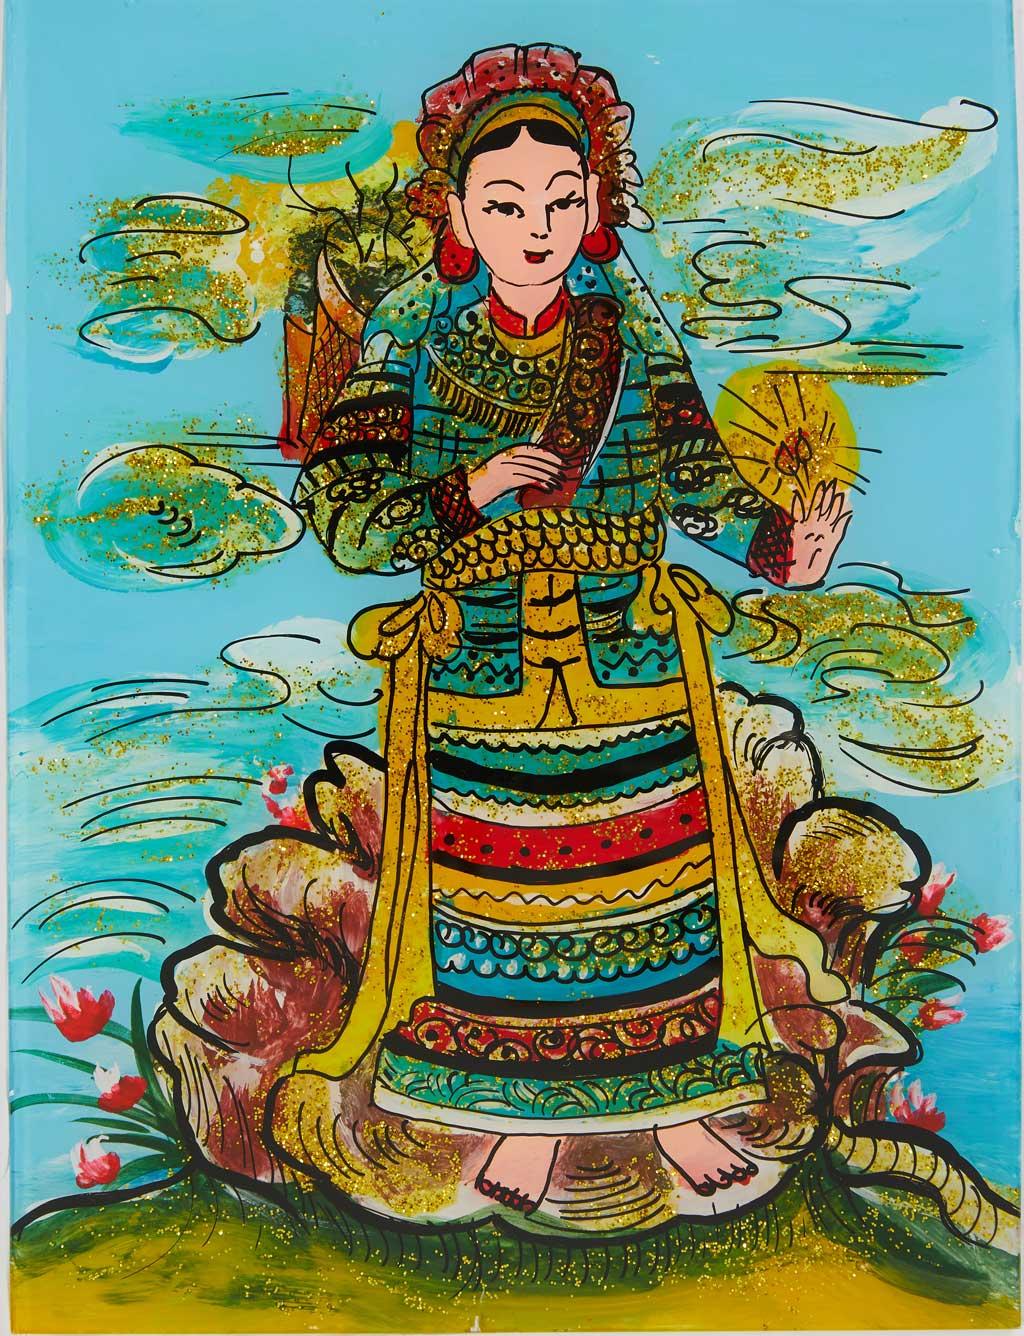 Tranh dân gian Huế: Tranh dân gian Huế là một nét độc đáo trong nghệ thuật dân gian của Việt Nam. Với những hình ảnh phong phú về lịch sử, văn hóa và địa phương, các nghệ sĩ đã tạo ra những tác phẩm đầy màu sắc và sức sống. Hãy đến Huế và thưởng thức những bức tranh tuyệt đẹp này!